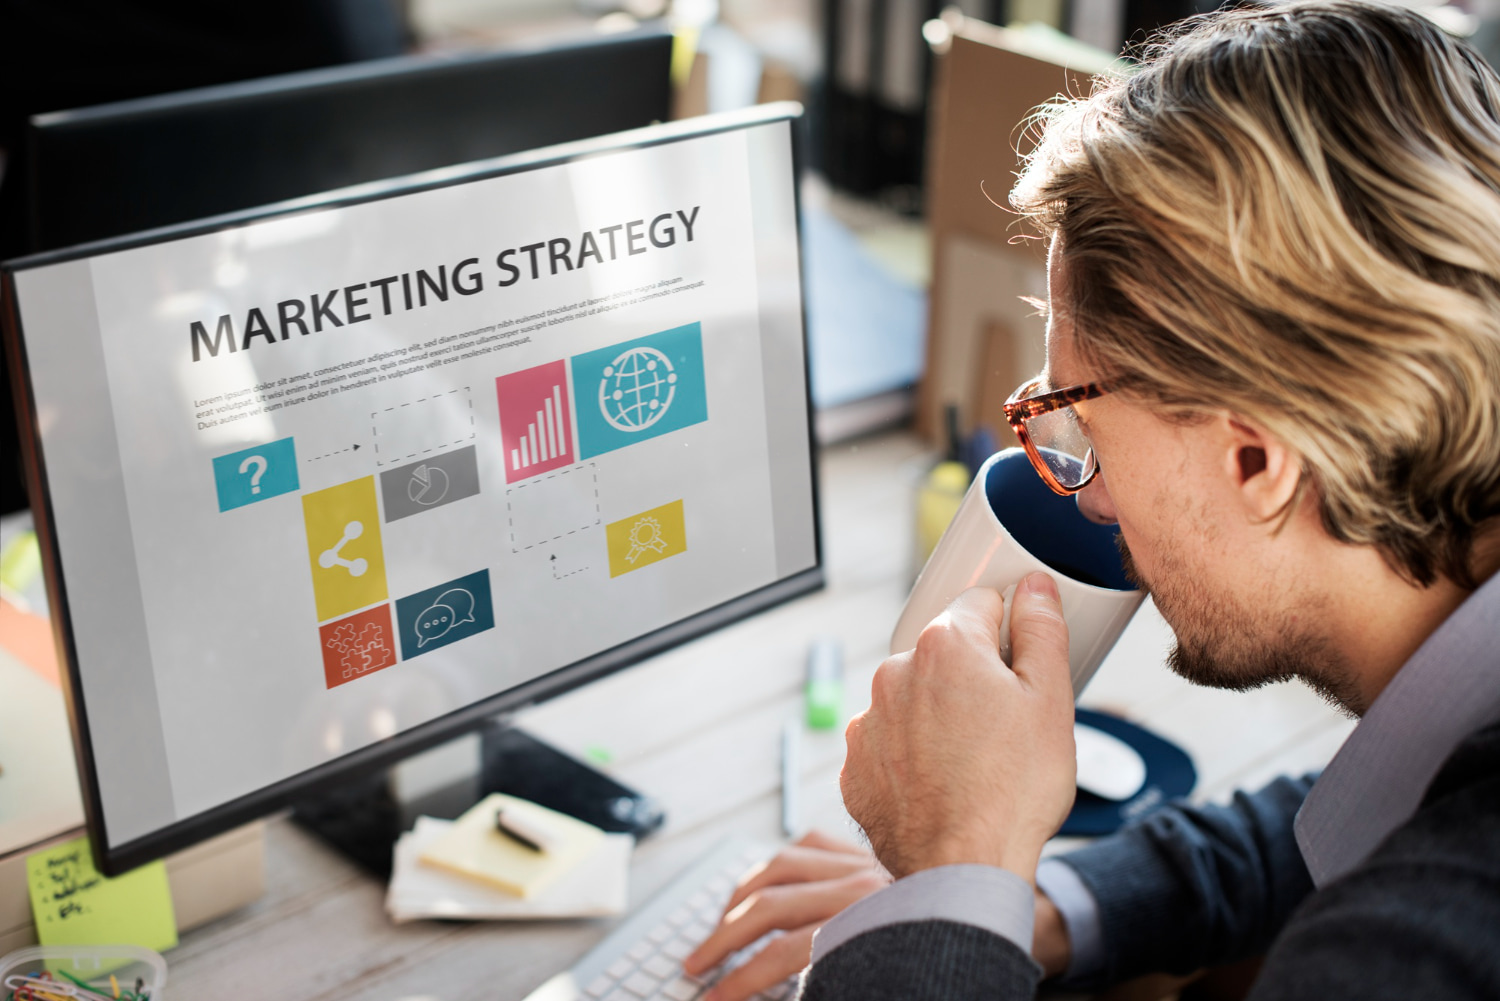 Brand strategist vs digital marketer